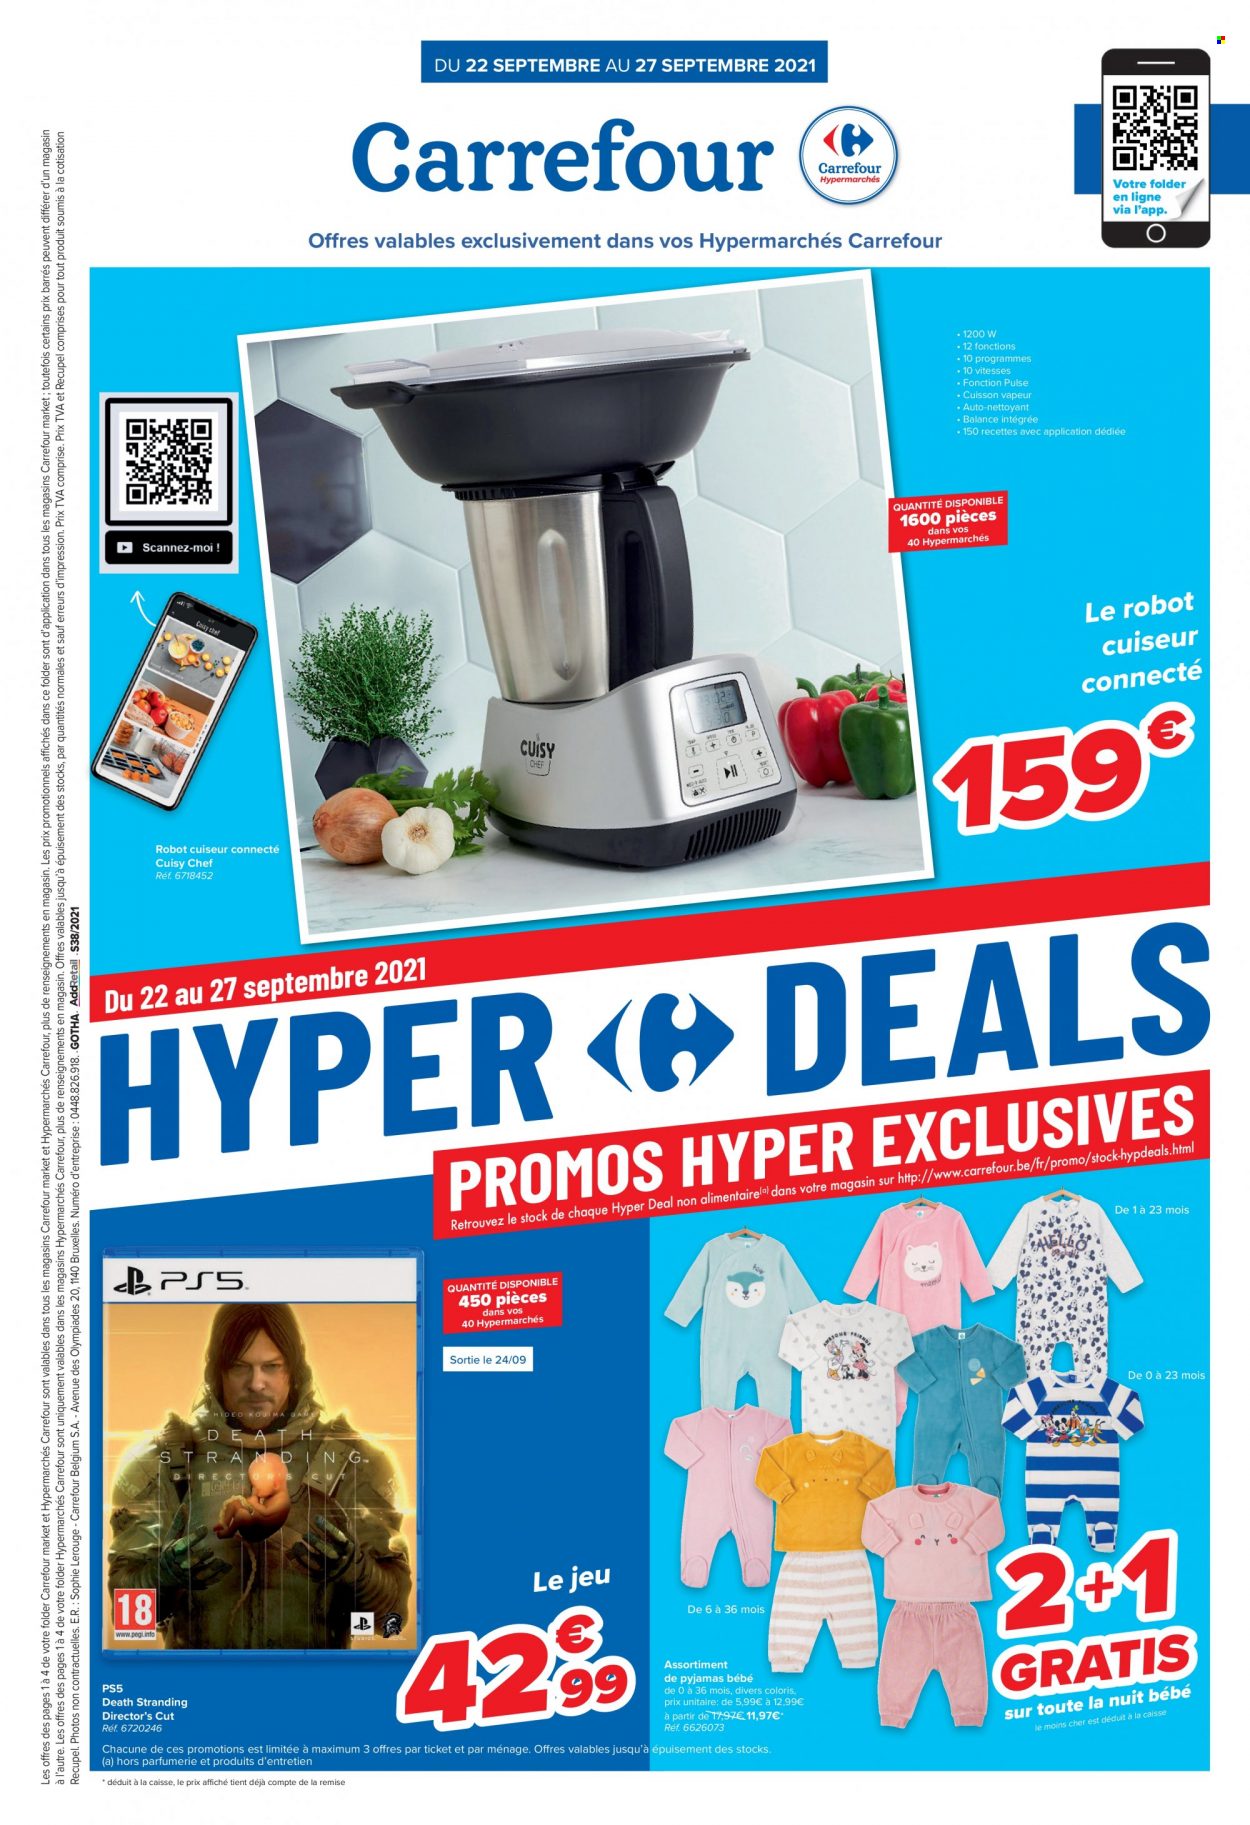 thumbnail - Catalogue Carrefour hypermarkt - 22/09/2021 - 27/09/2021 - Produits soldés - PS5, robot de cuisine, pyjama. Page 1.